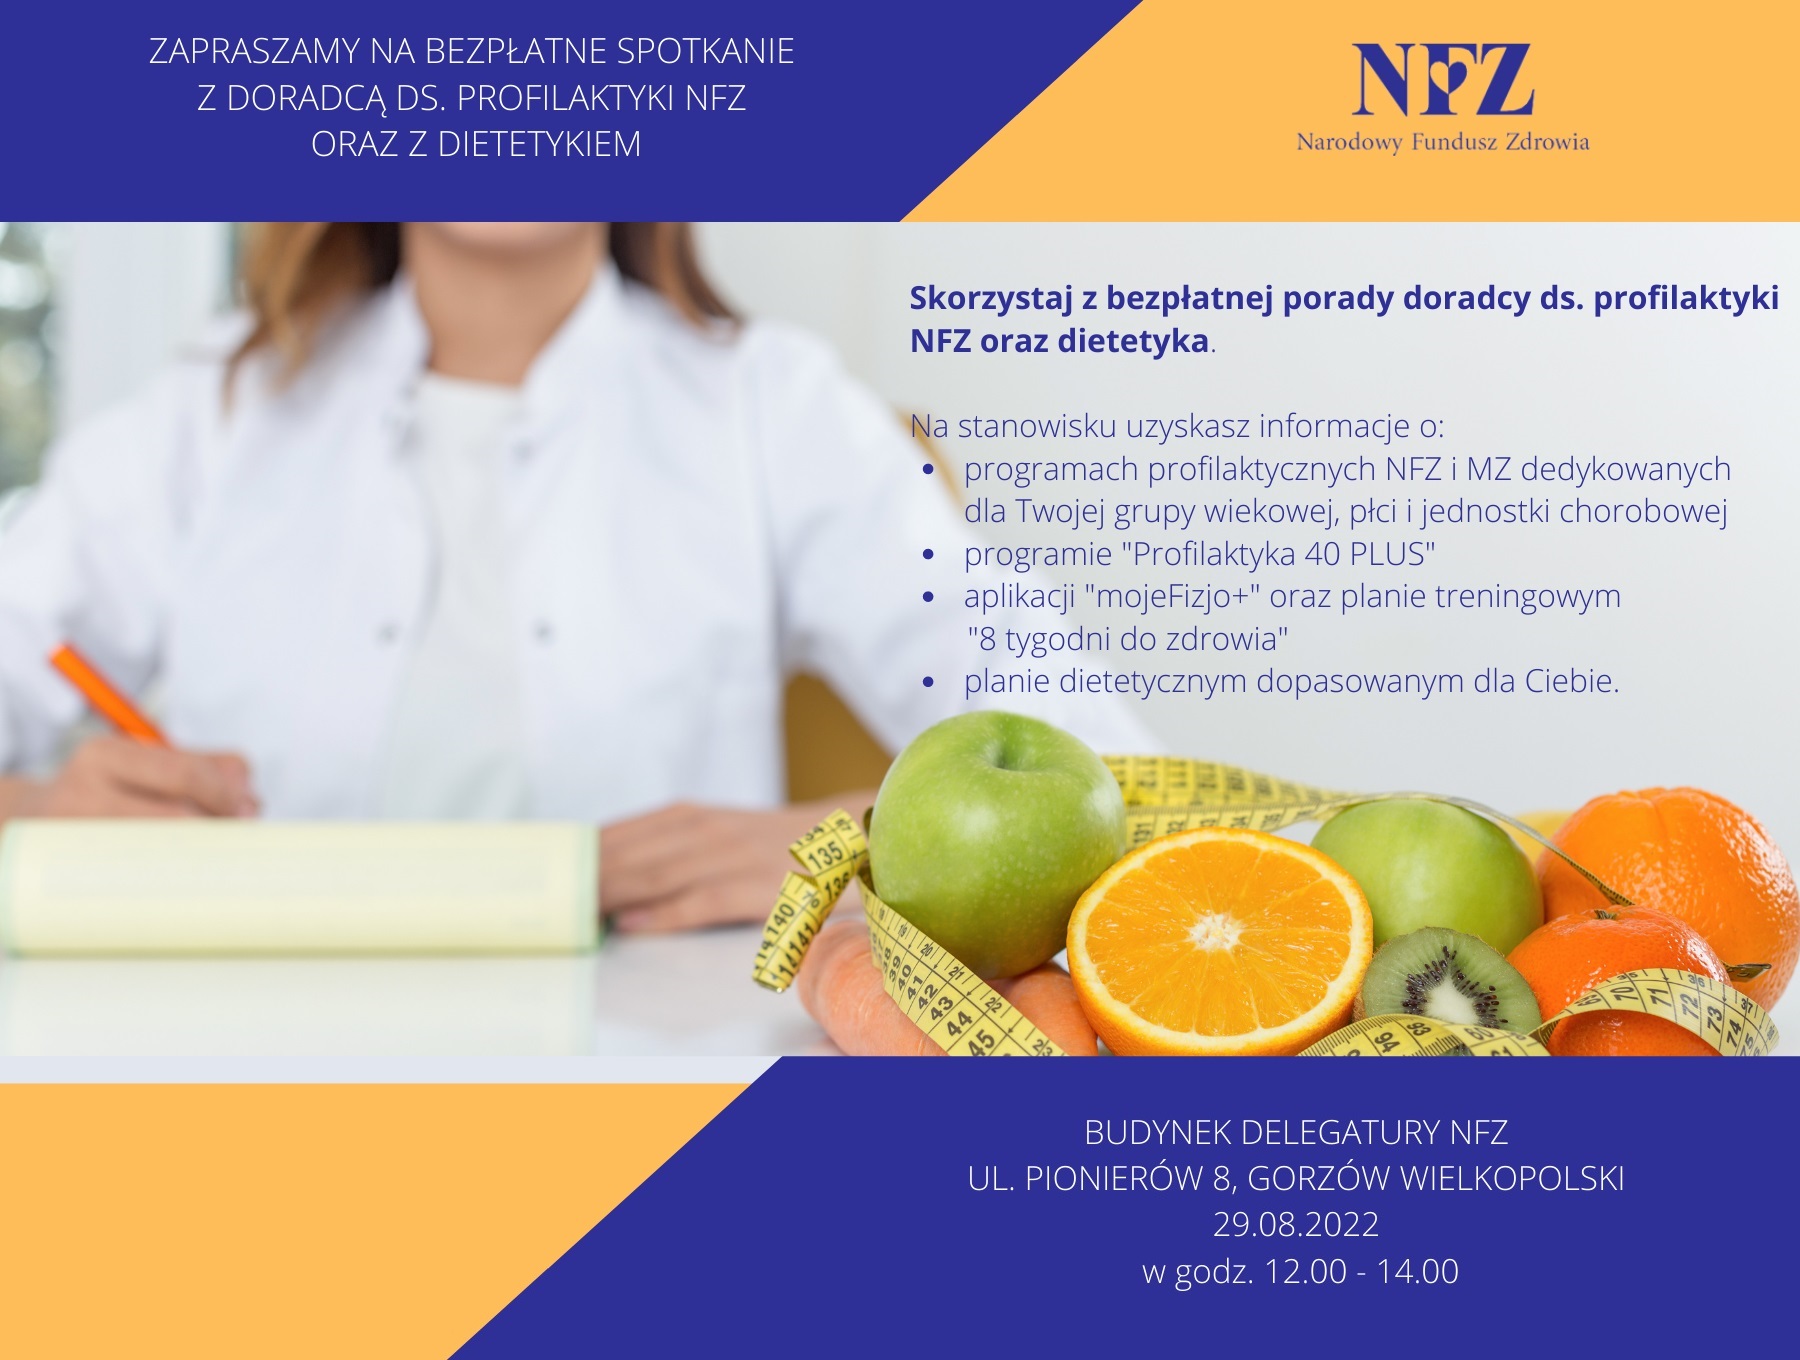 Ilustracja do informacji: Zapraszamy do delegatury LOW NFZ w Gorzowie Wielkopolskim na spotkanie z dietetyczką.